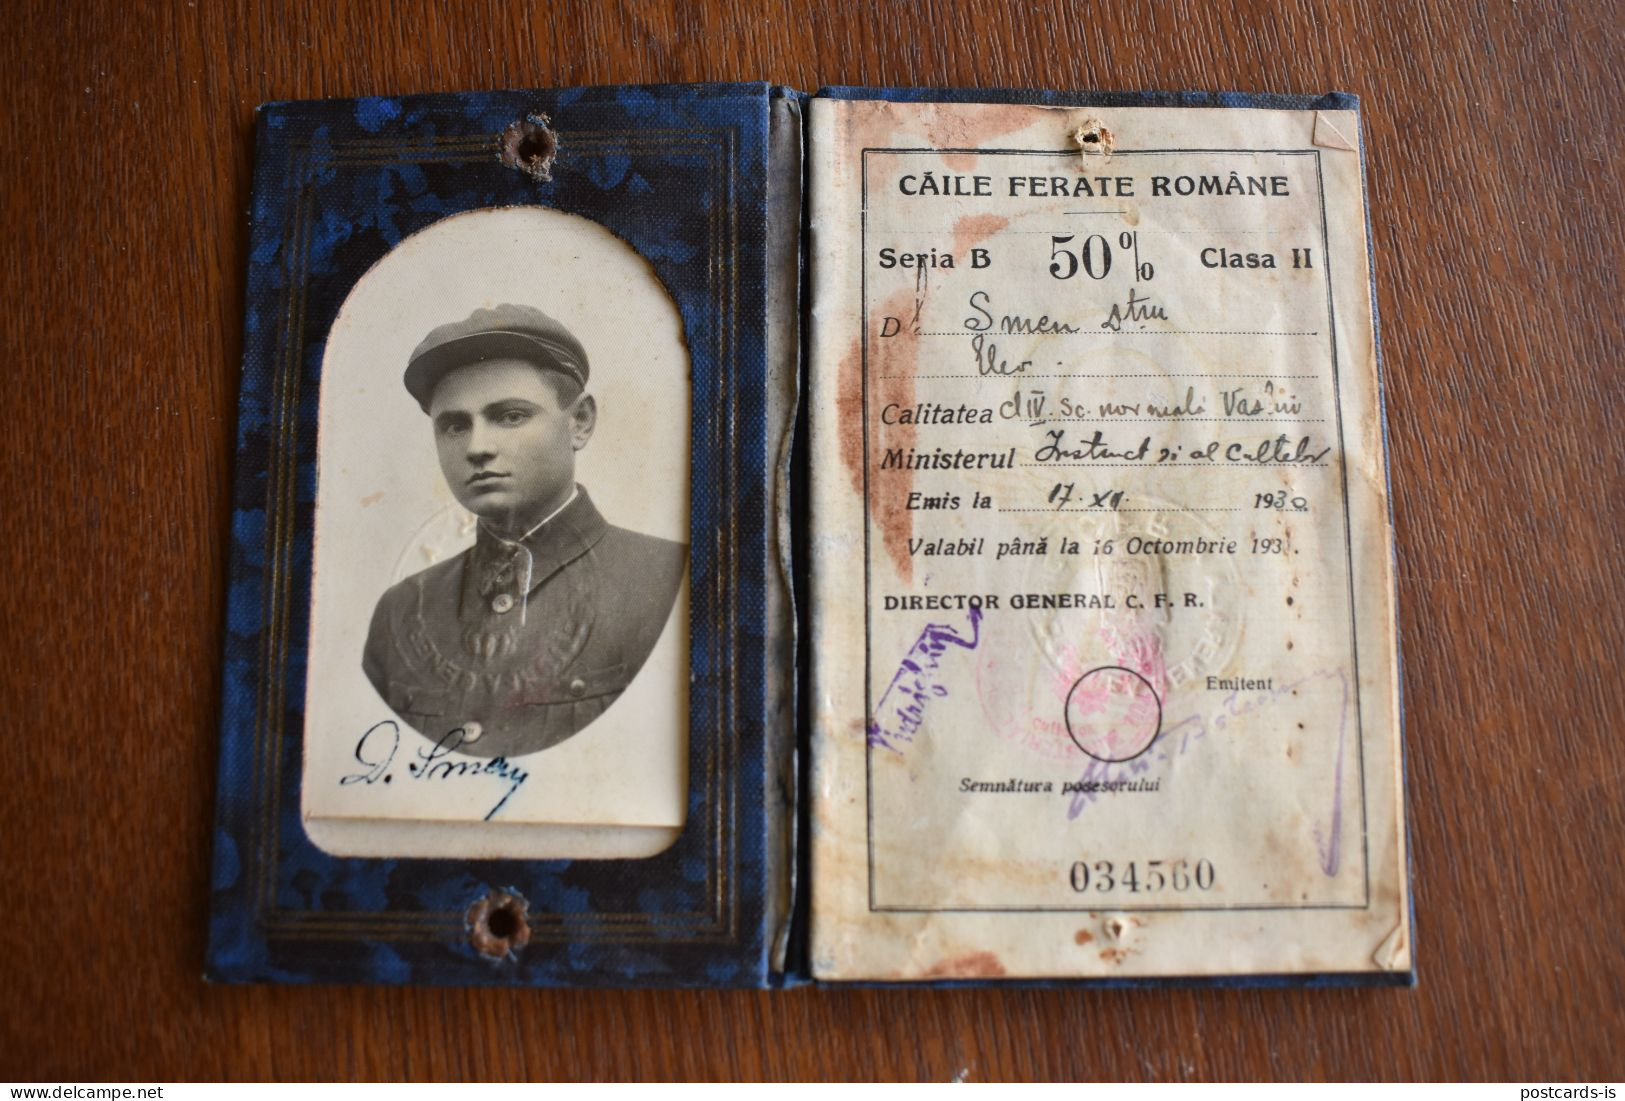 Legitimatie Romania CFR Caile Ferate Romane 1930 Carnet De Identitate Pentru Elevii Liceelor Militare Si Civile - Europa